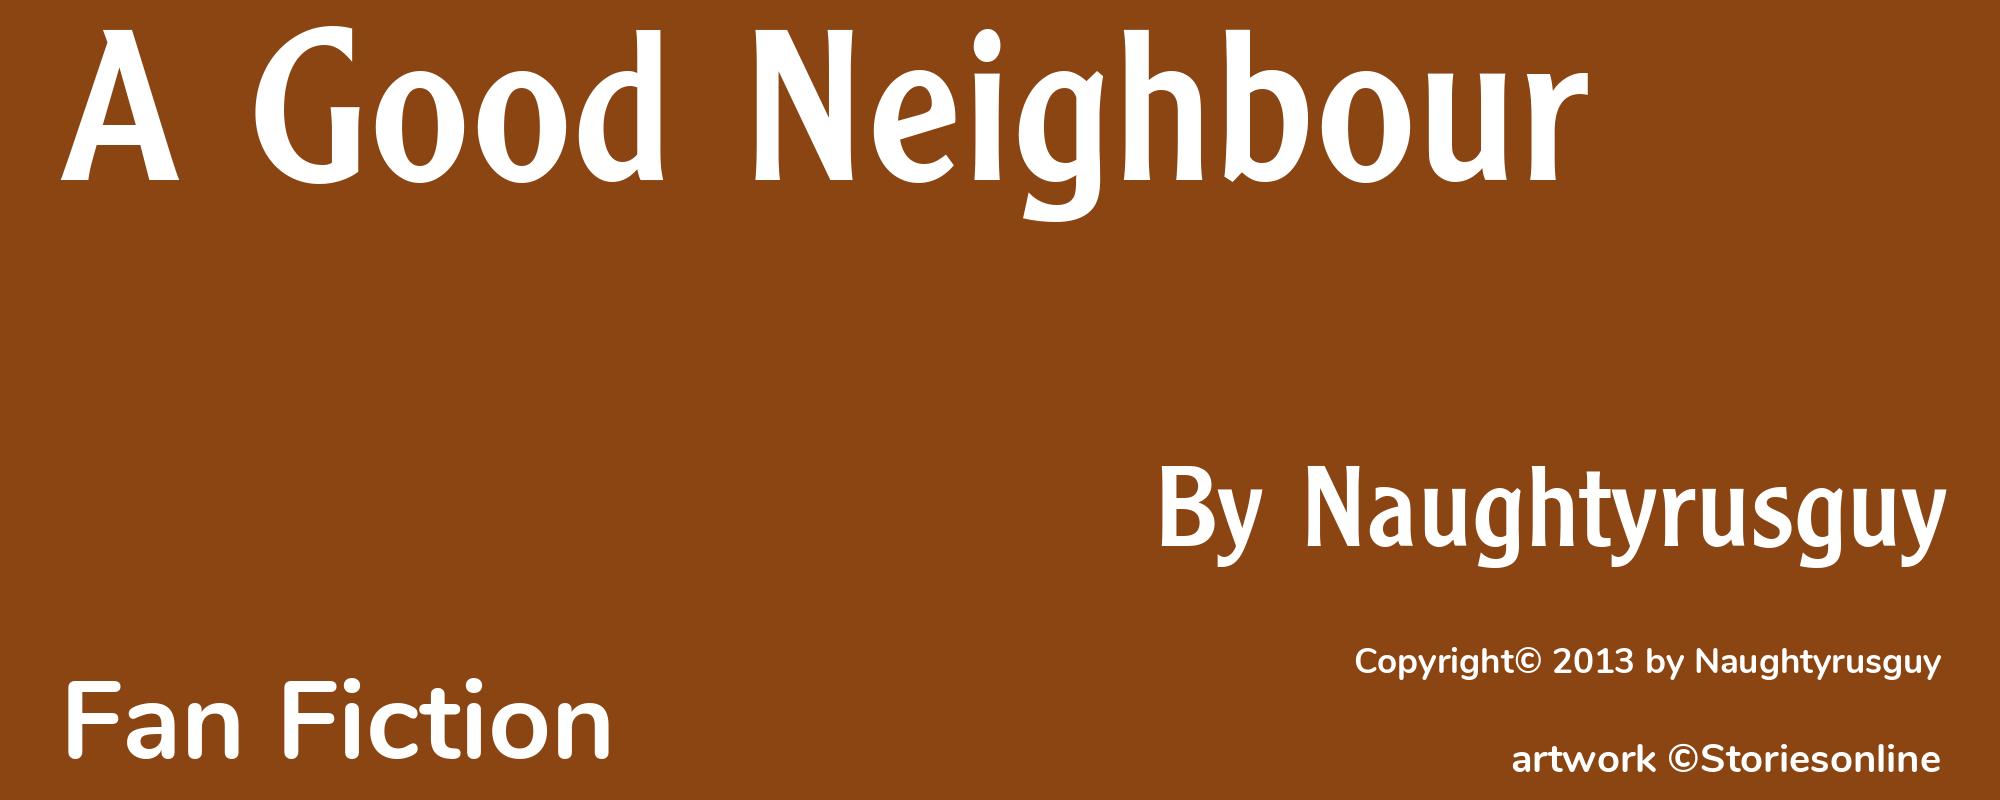 A Good Neighbour - Cover